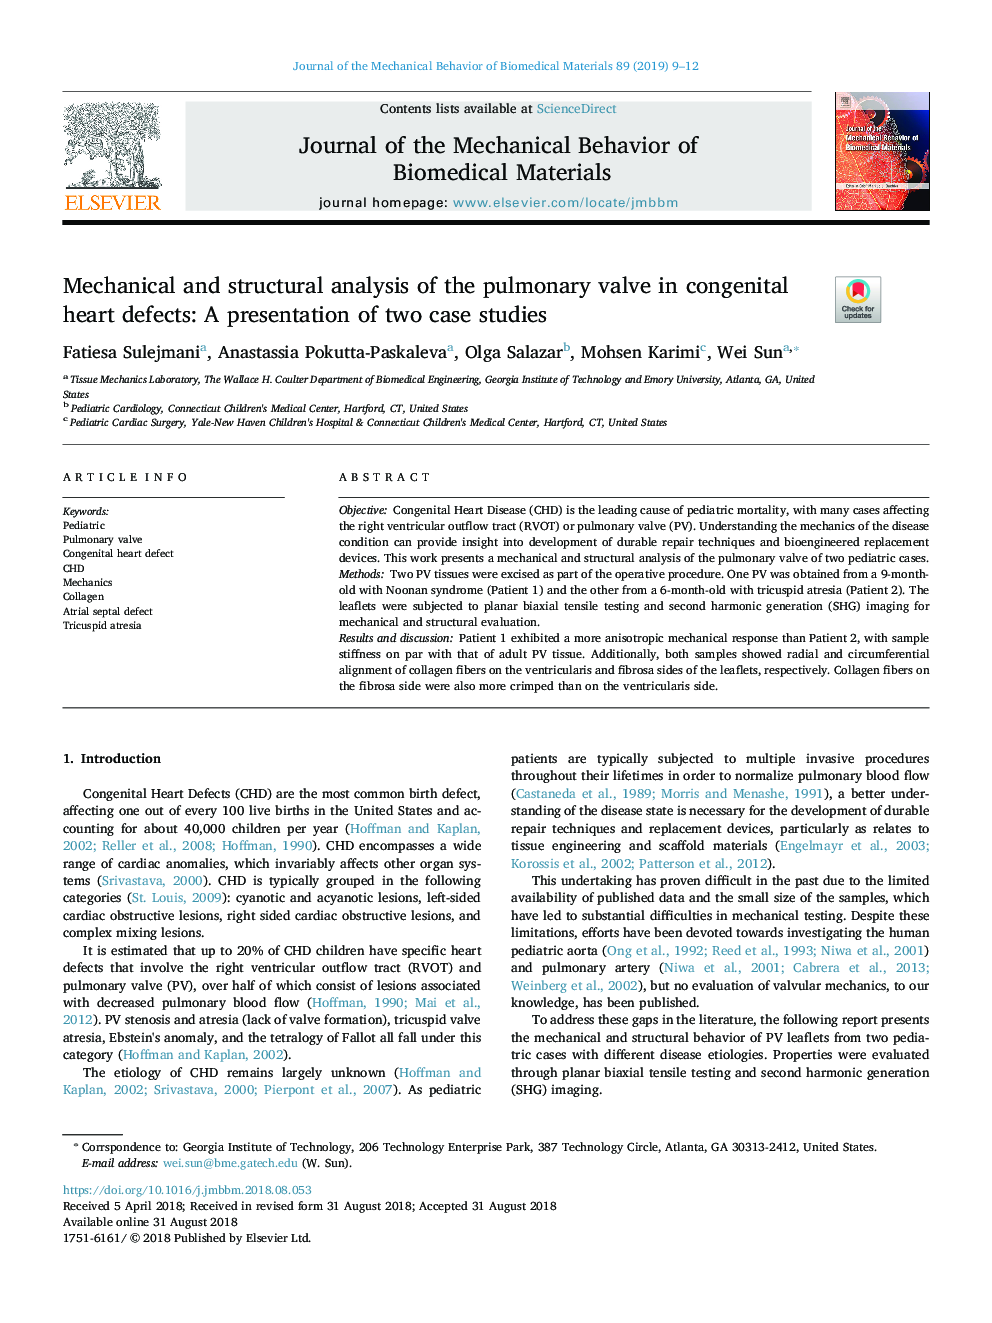 تجزیه و تحلیل مکانیکی و ساختاری دریچه ریه در نقایص مادرزادی قلبی: ارائه دو مطالعه موردی